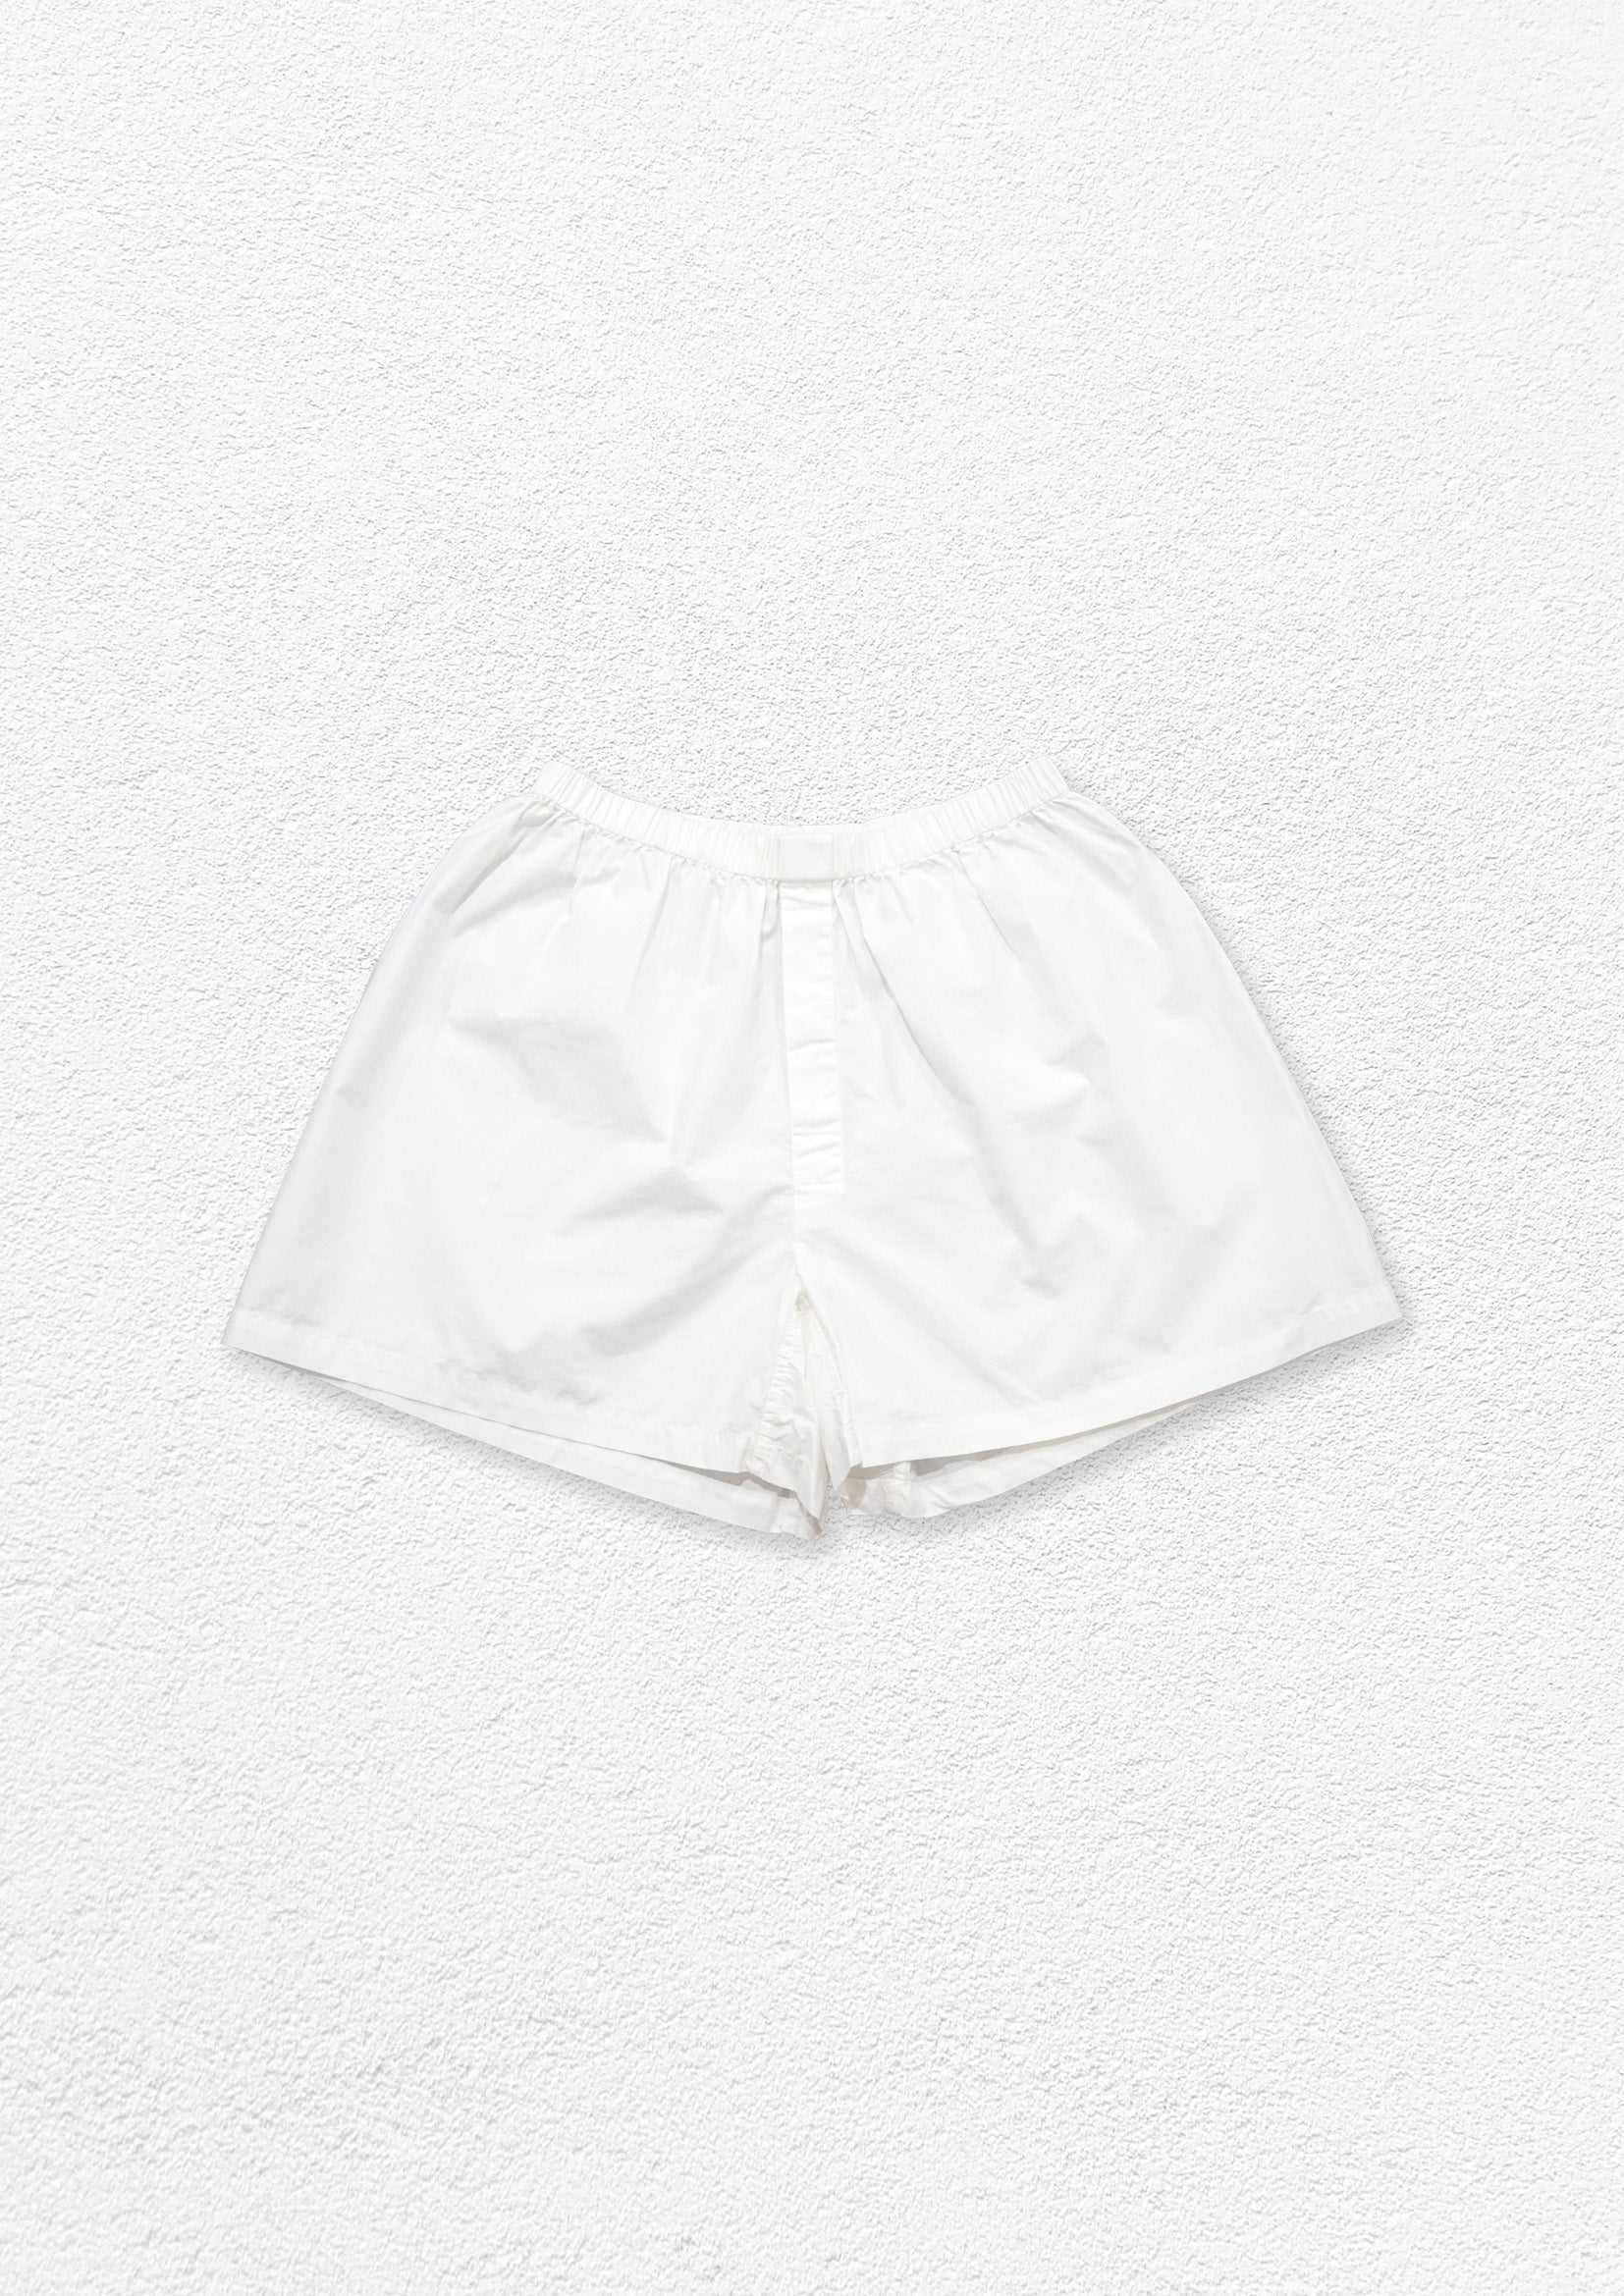 Unisex boxer shorts underwear - white